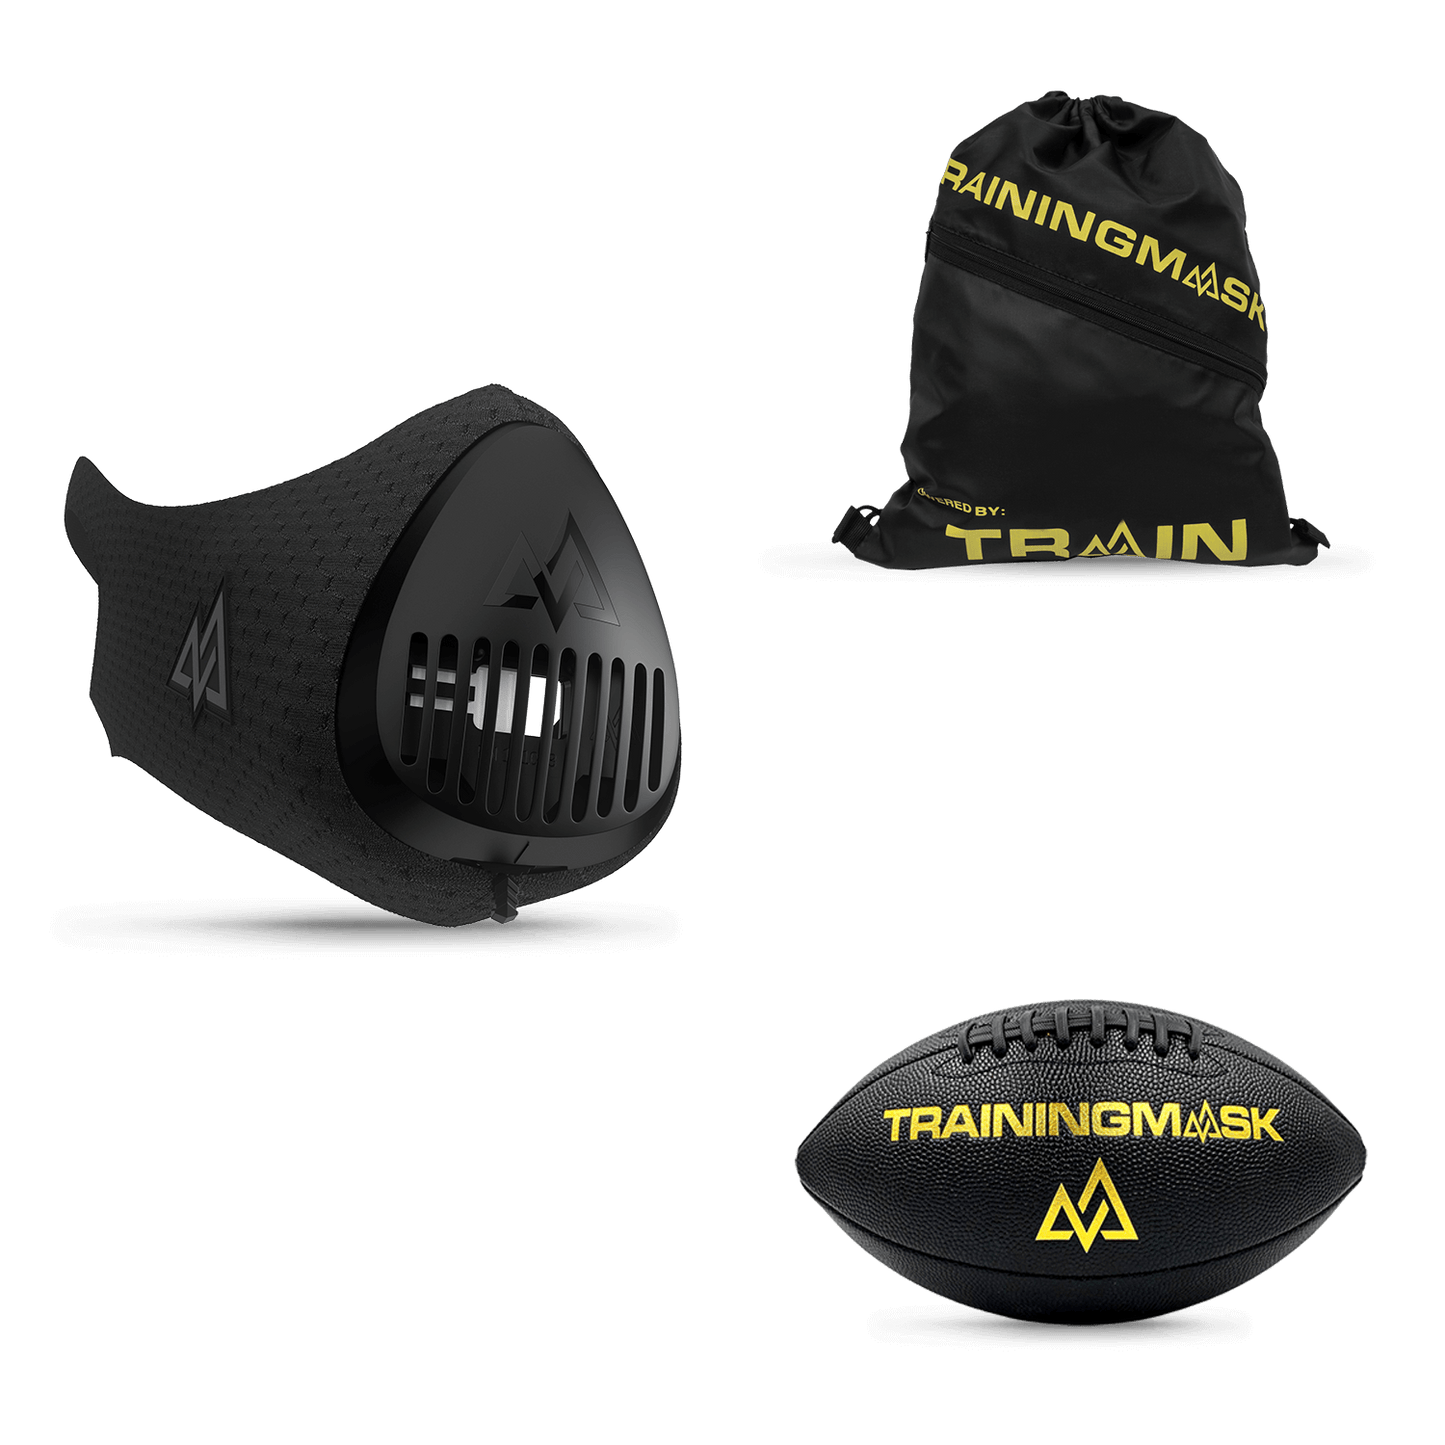 TRAININGMASK 3.0 - Elevation Training Mask 3.0 - Stamina, Performance,  Altitude Running Mask, Clinically Proven & Patented